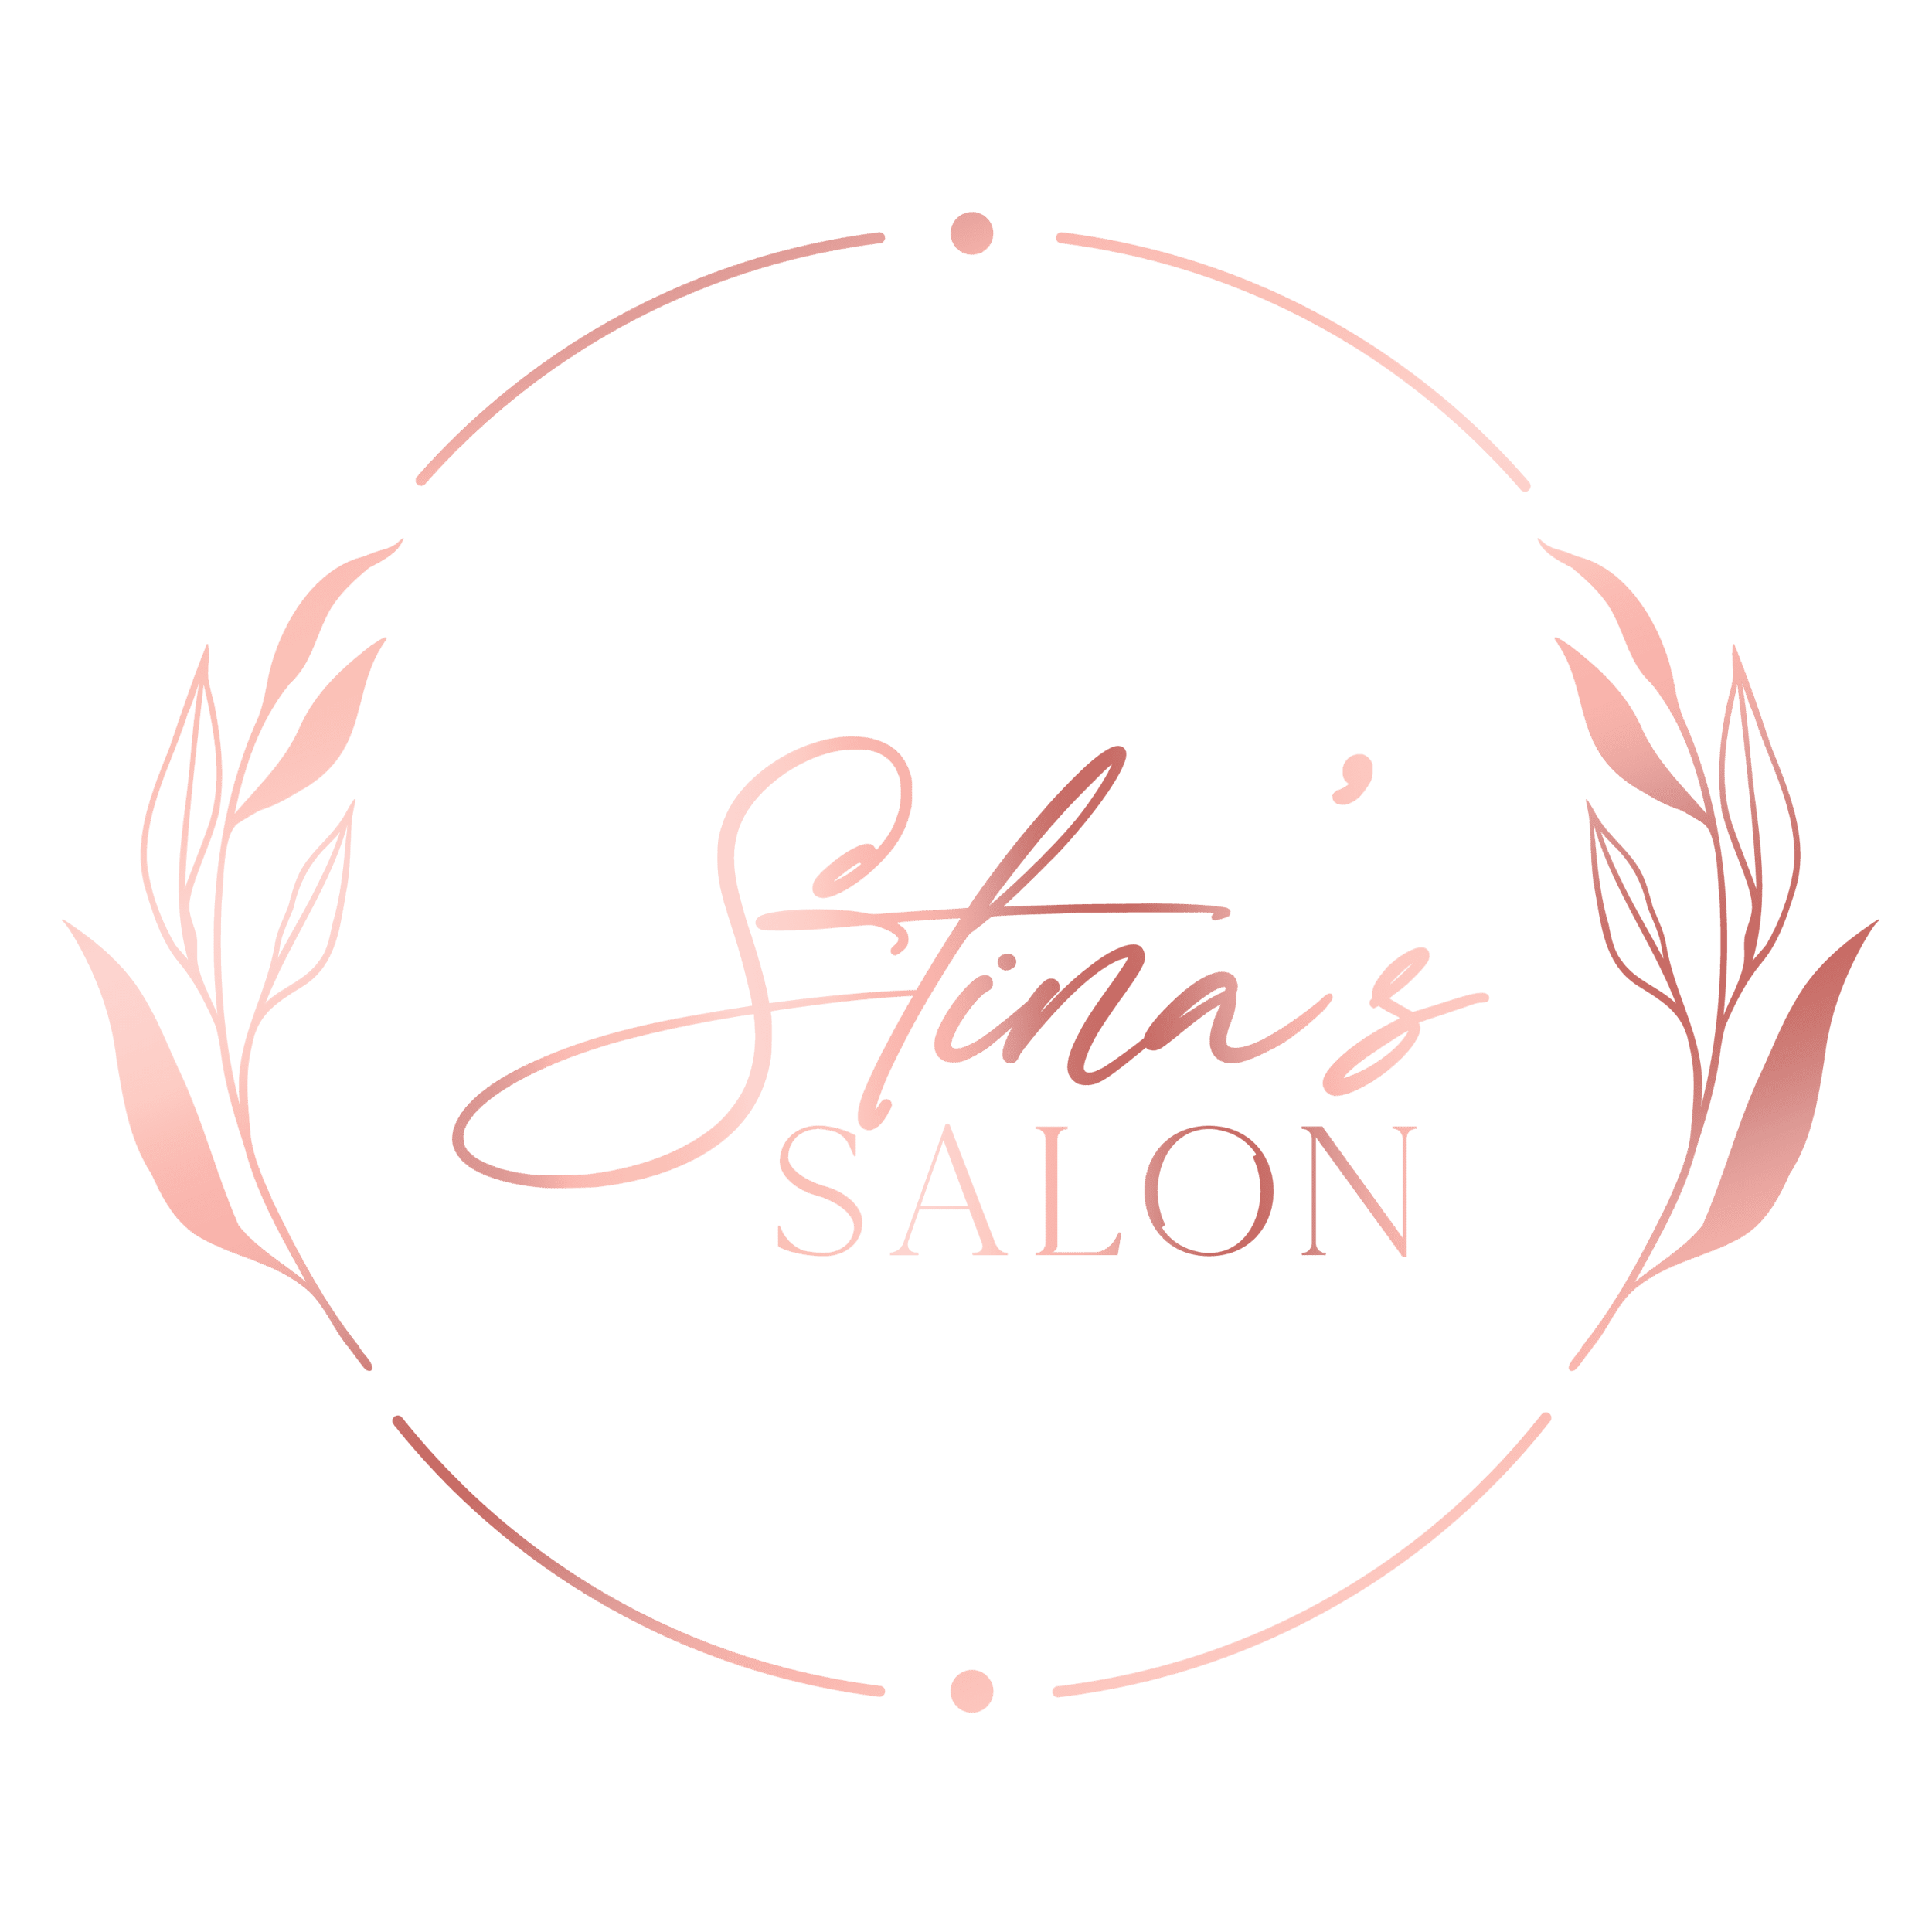 Stina’s Salon